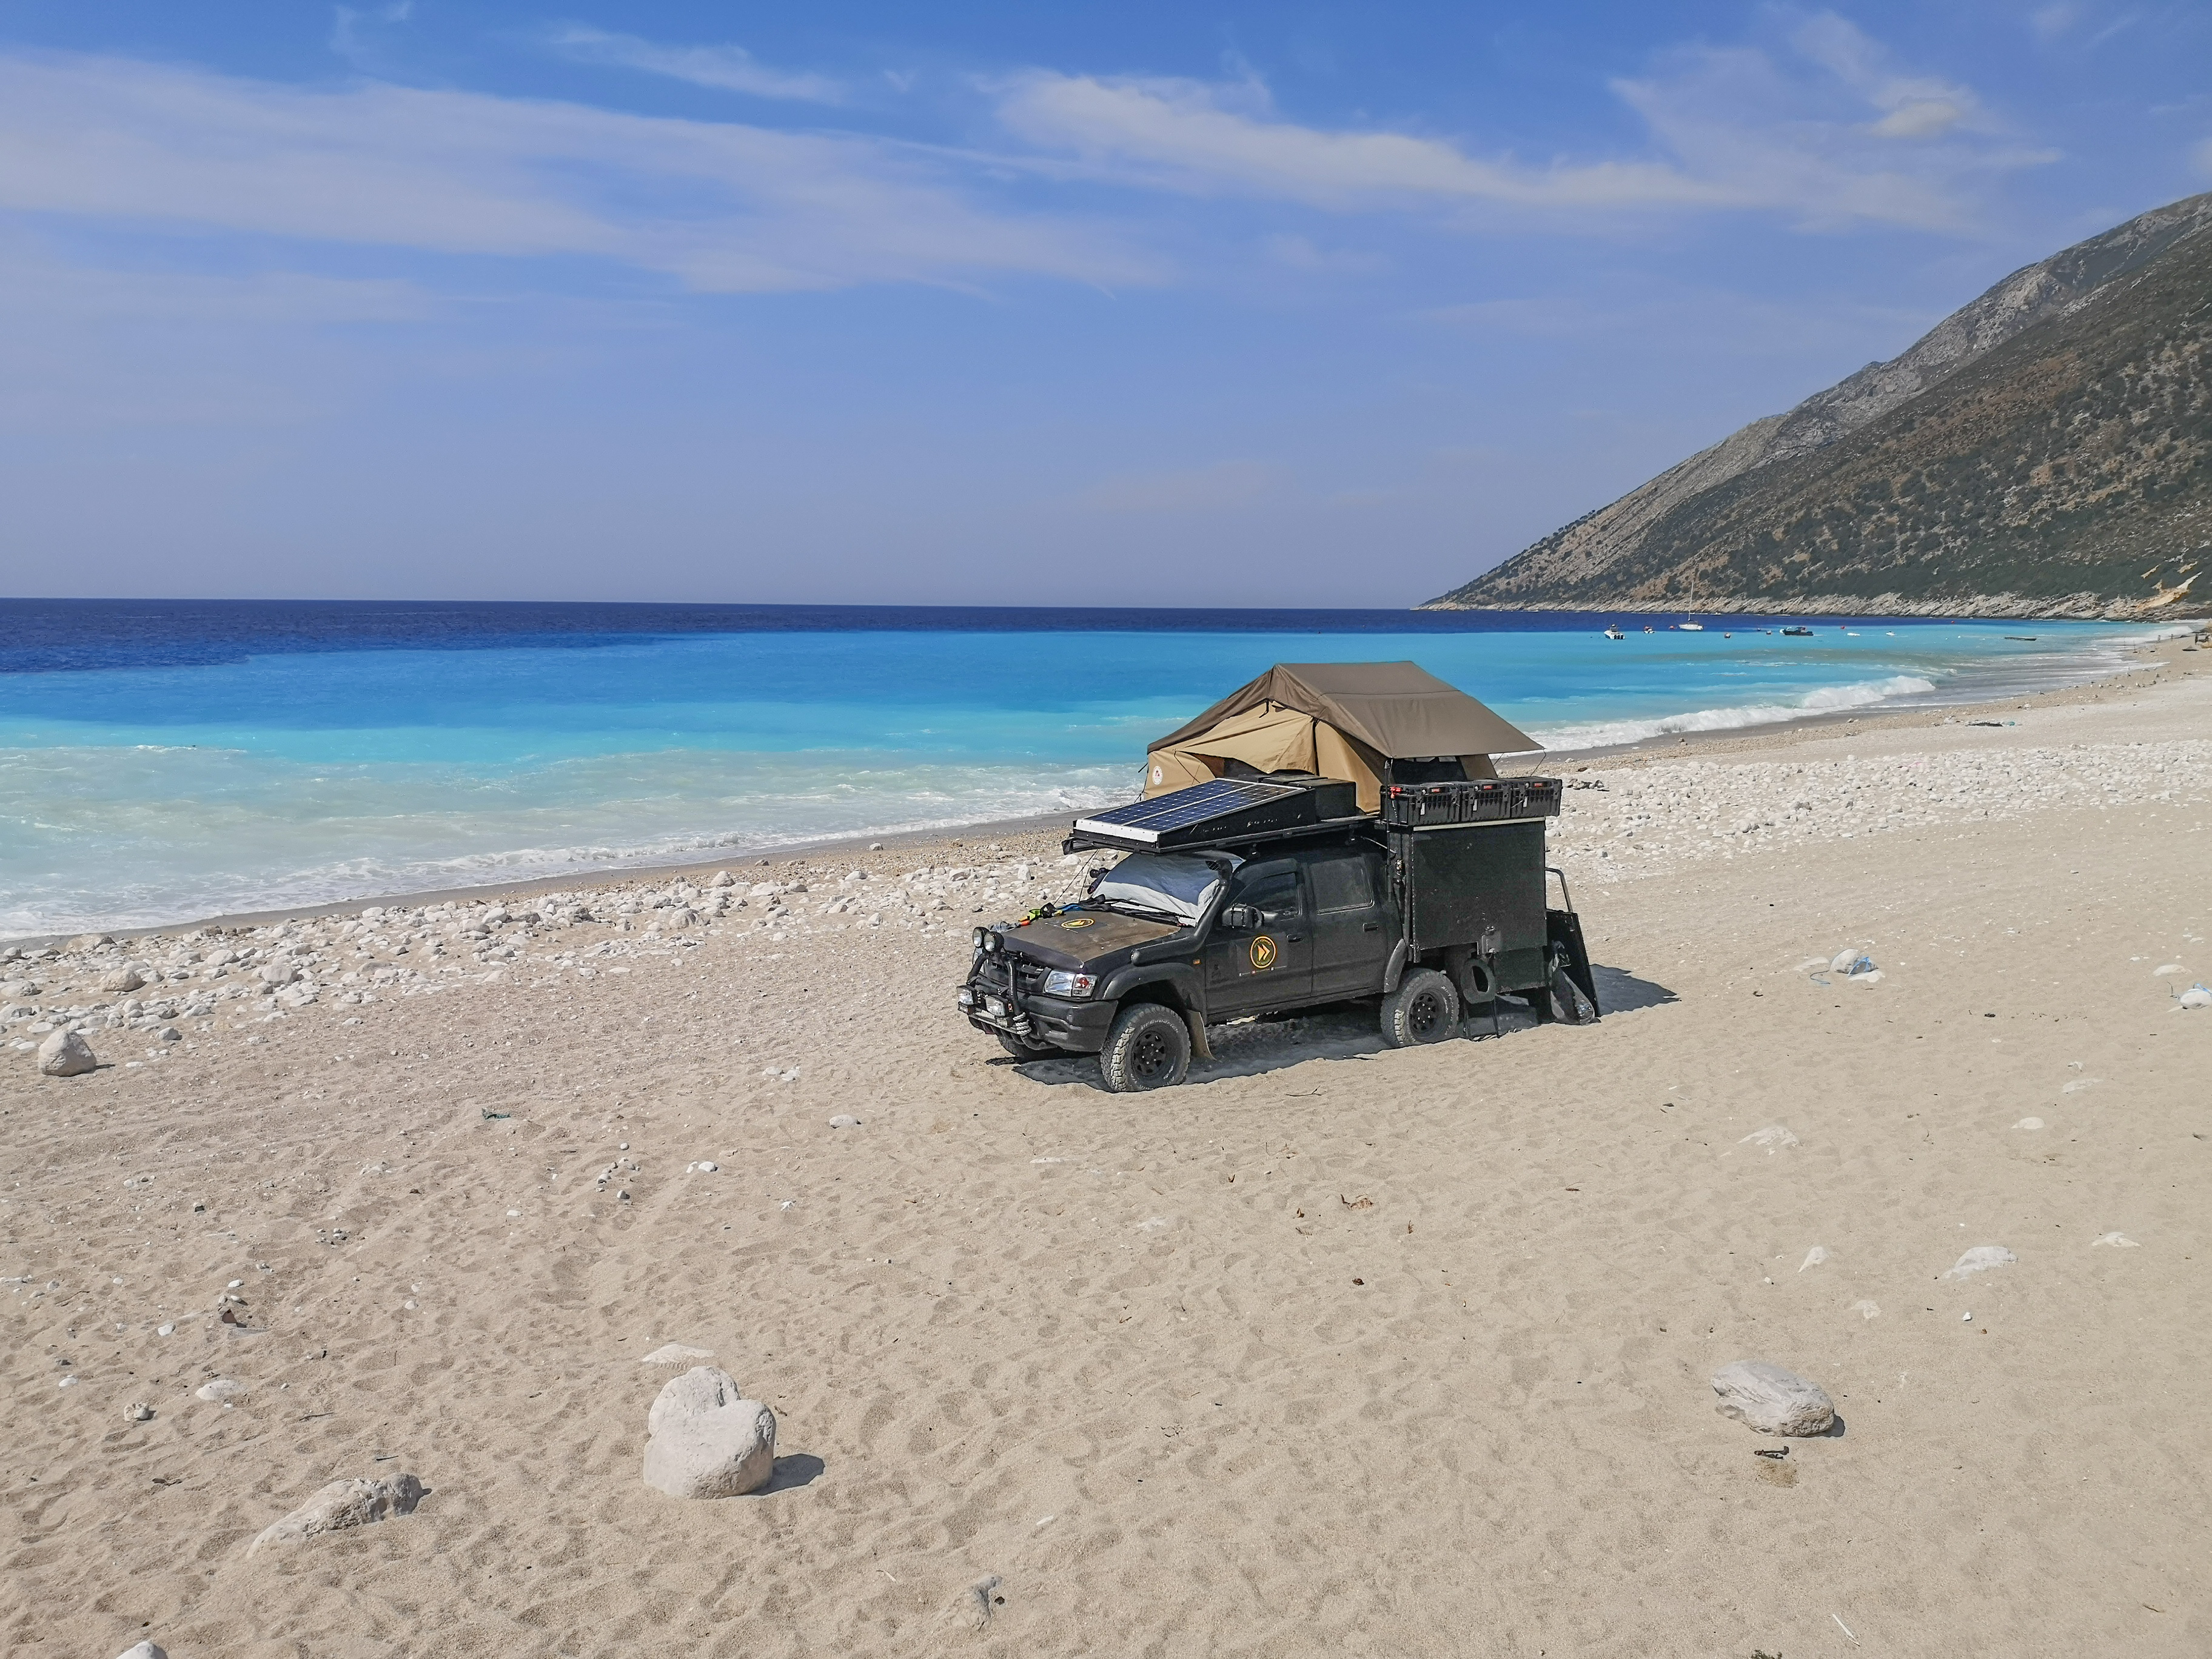 W Albanii, plaża można wjechać samochodem i spać na dziko.
A 4x4x truck on a beach in Albania, wild camping.